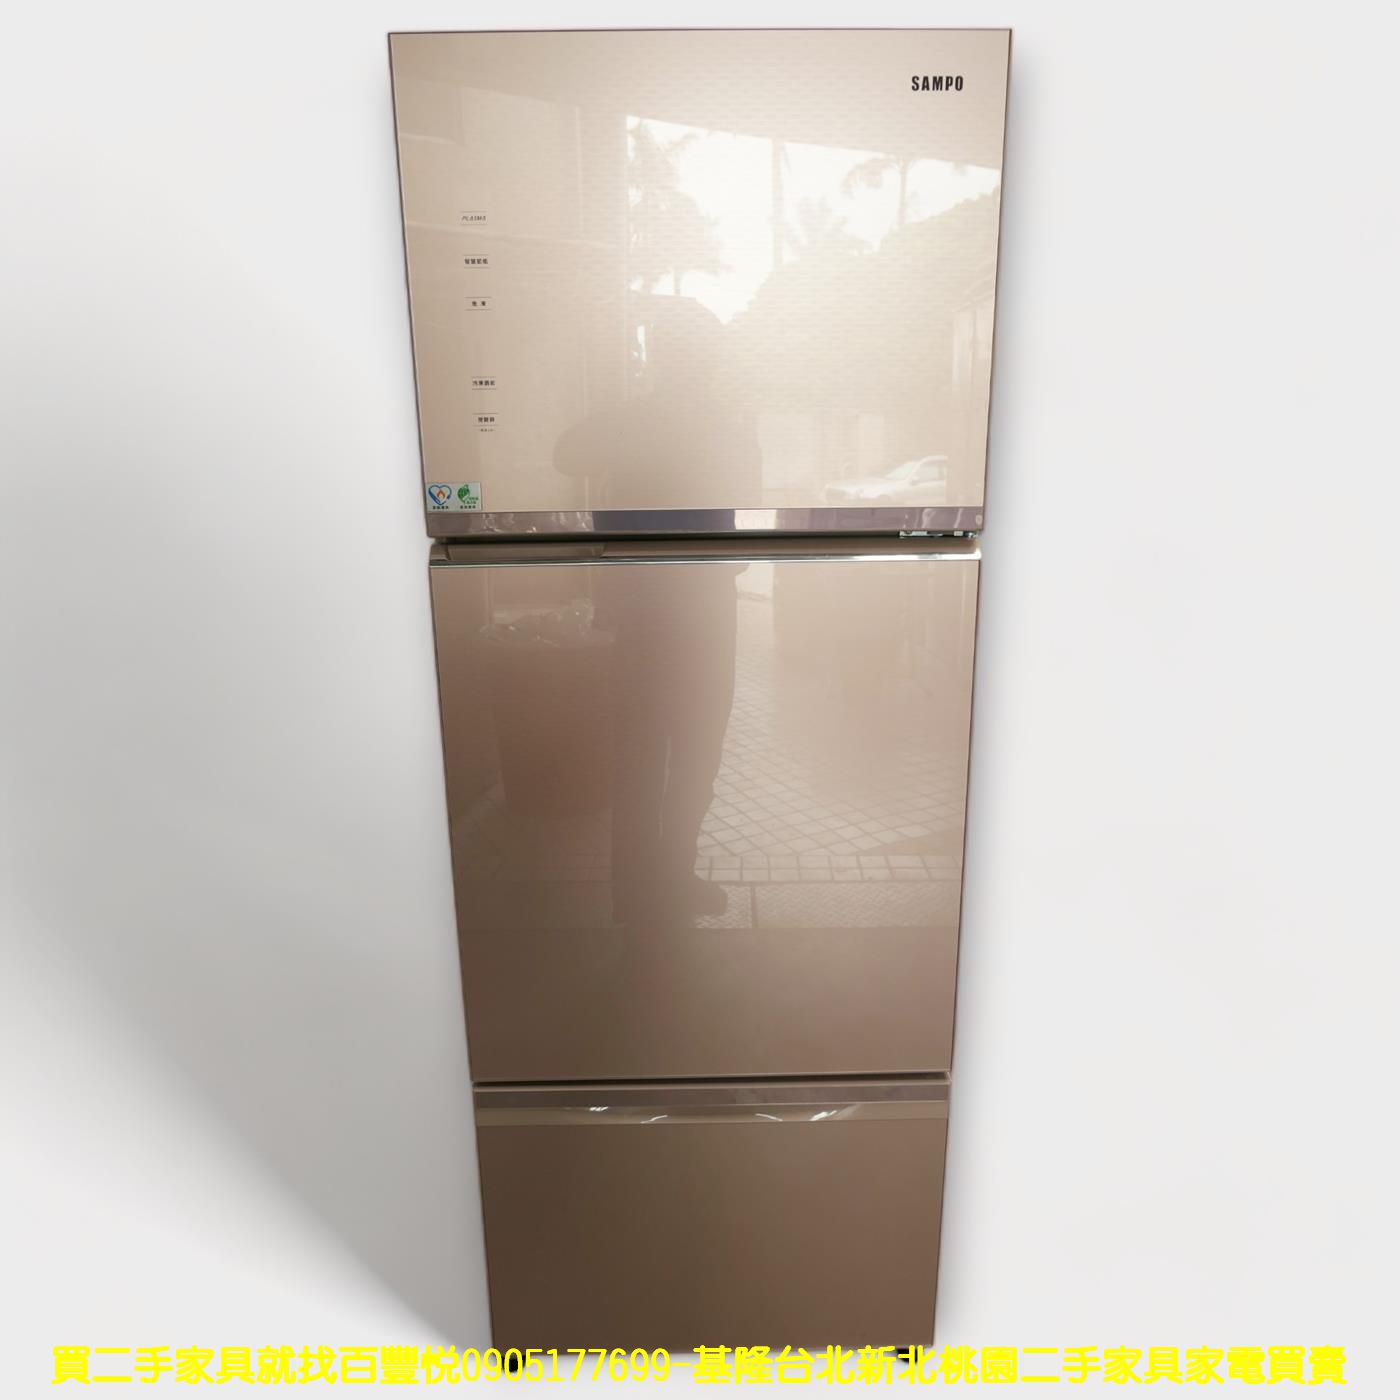 二手冰箱 聲寶 455公升 變頻一級 三門冰箱 大冰箱 大家電 中古電器 中古家電